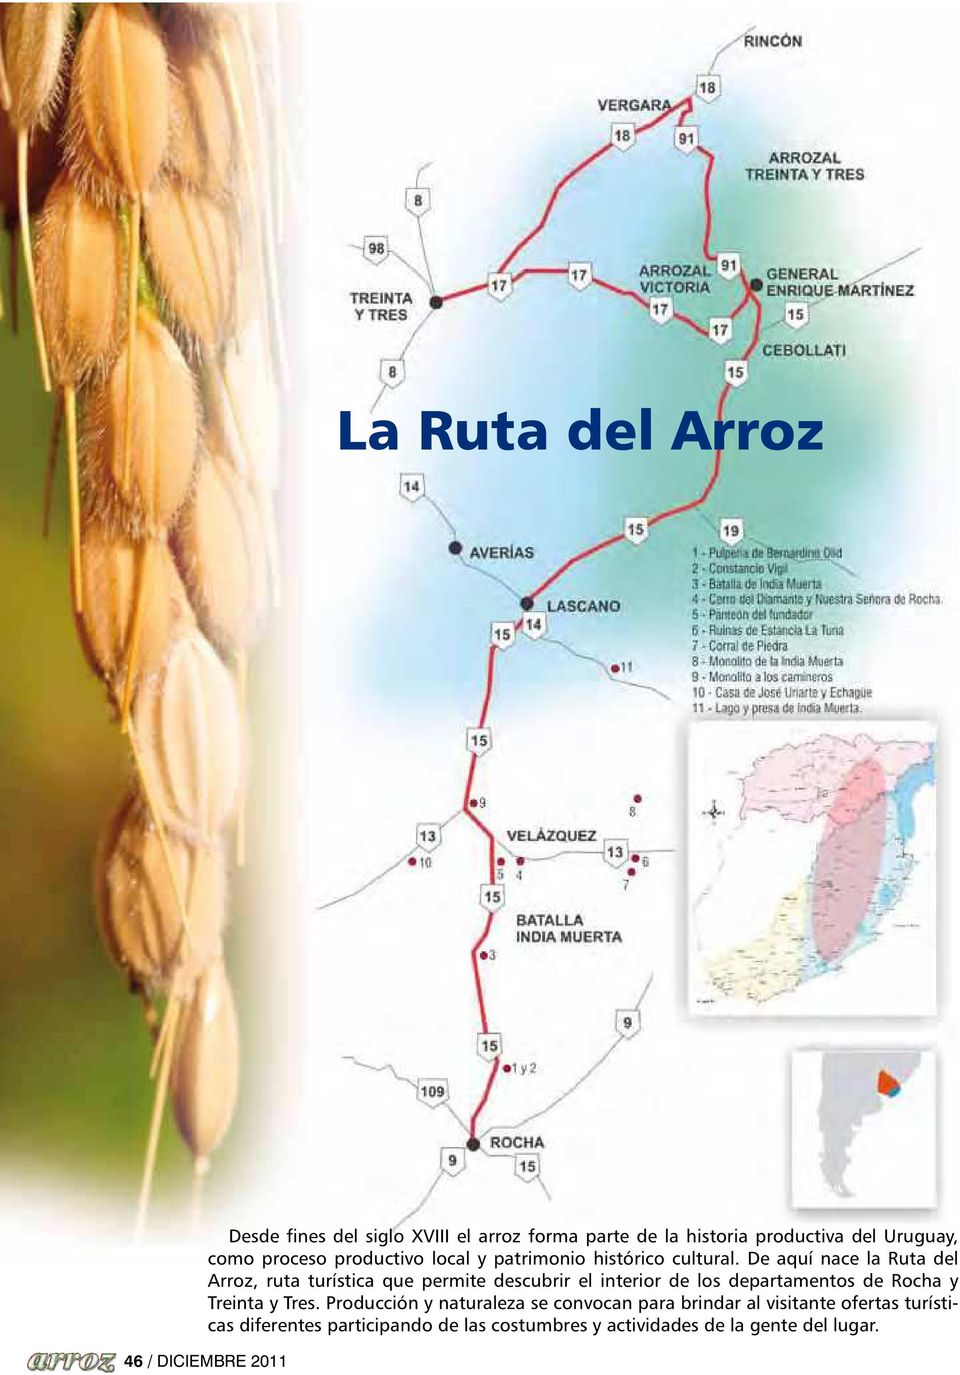 De aquí nace la Ruta del Arroz, ruta turística que permite descubrir el interior de los departamentos de Rocha y